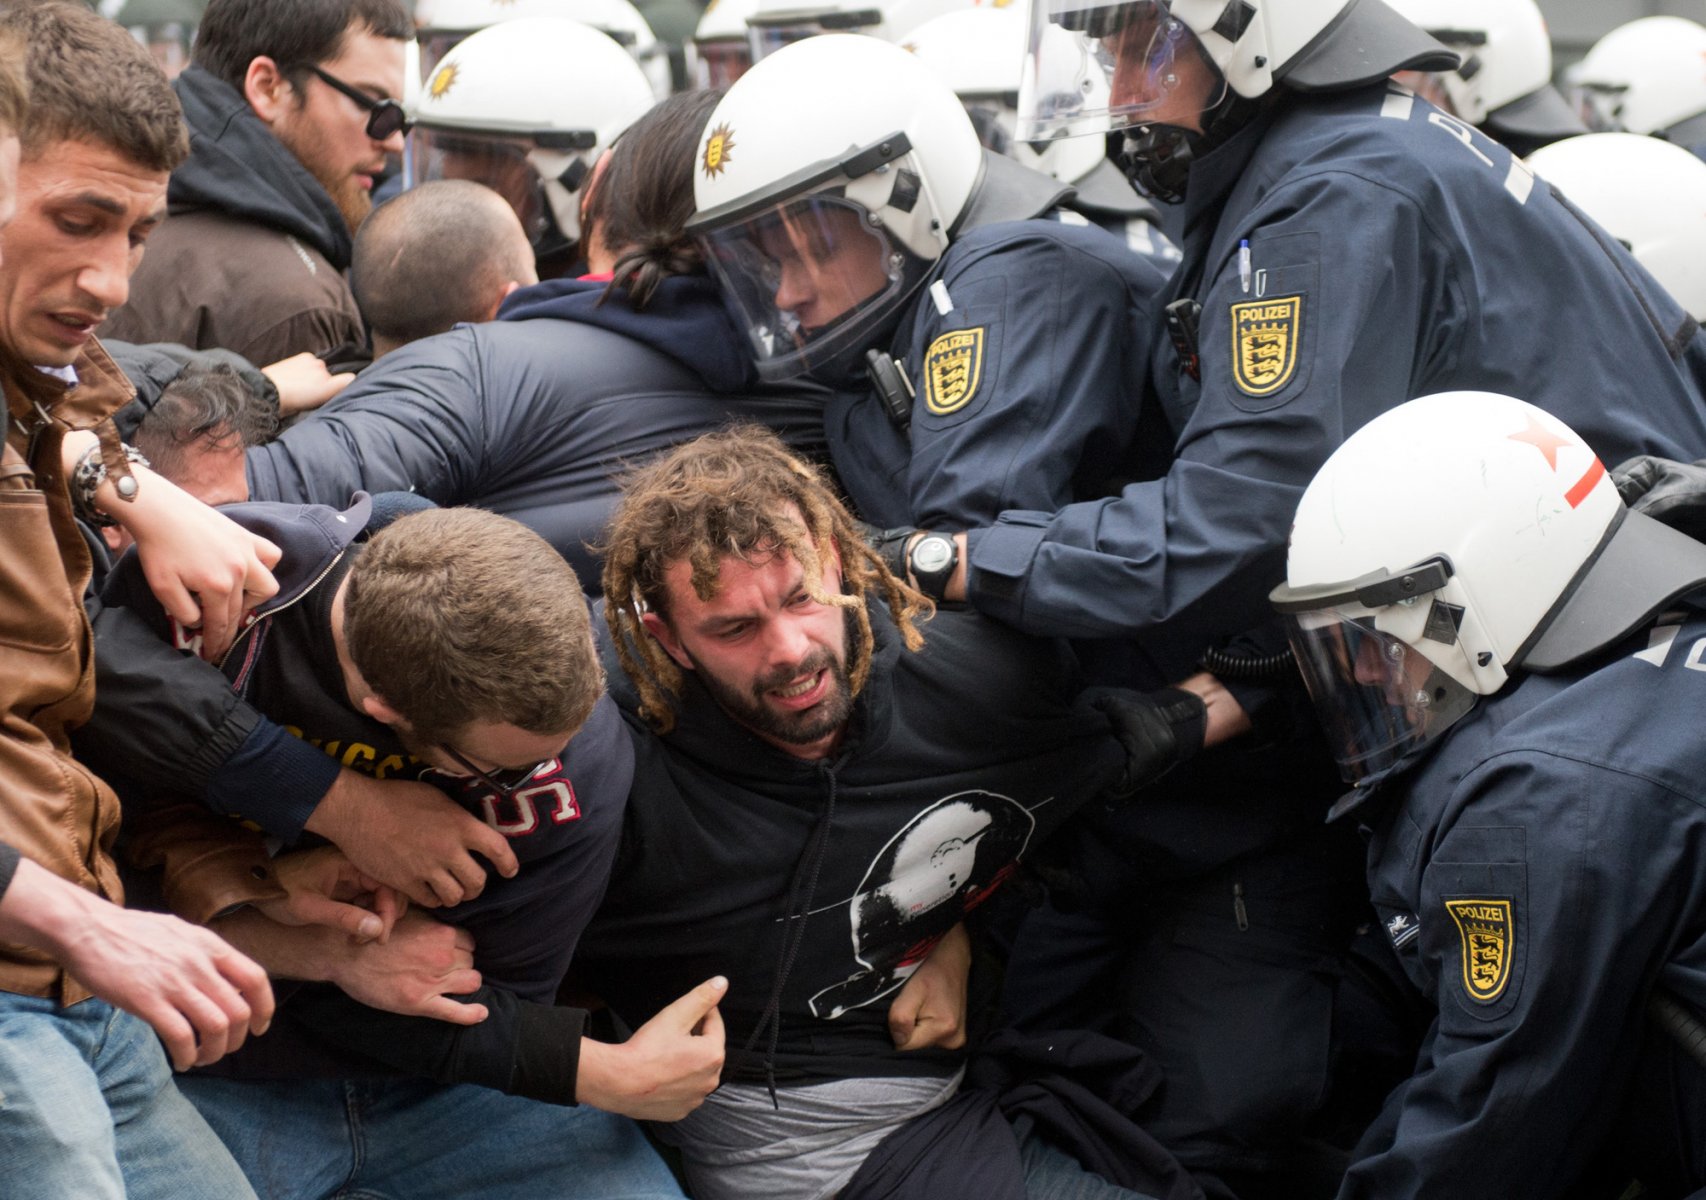 Zu massiven Auseinandersetzungen zwischen der Polizei und Demonstranten der Blockupy-Bewegung kommt es am 01.06.2013 in der Innenstadt von Frankfurt am Main (Hessen) bei der Auflösung eines Polizeikessels. Foto: Boris Roessler/dpa